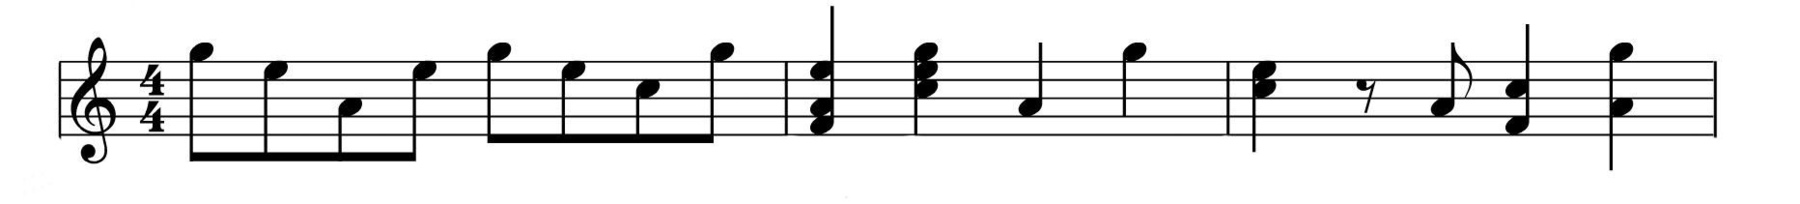 Ilustração. Pentagrama musical com uma clave de sol e cinco linhas horizontais divididas em oito conjuntos de espaços separados por linhas verticais. À direita da clave de sol há uma notação com os números 4 e 4 dispostos um acima do outro e notas musicais.